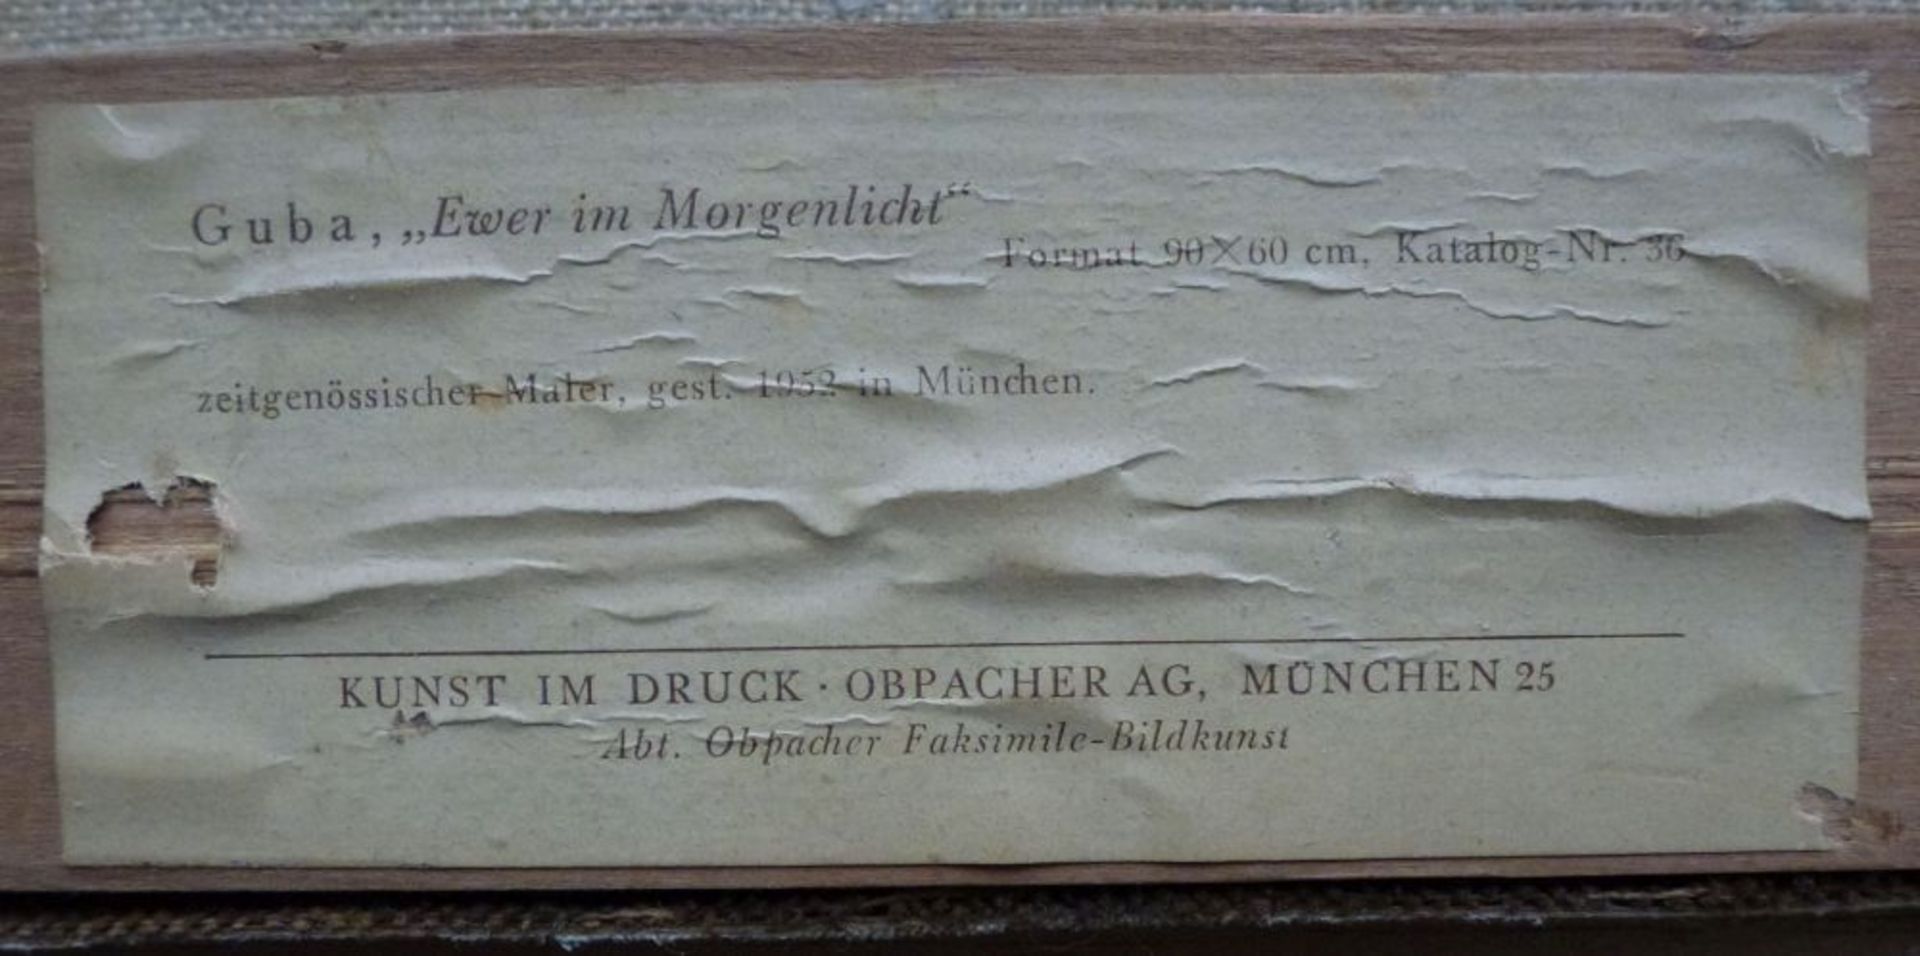 "Ewer im Morgenlicht"Rudolf Anton Guba, 1884 - 1950Öl/LW, sign., rs. bez., Kutter vor Hafen, 60x90 - Bild 5 aus 5